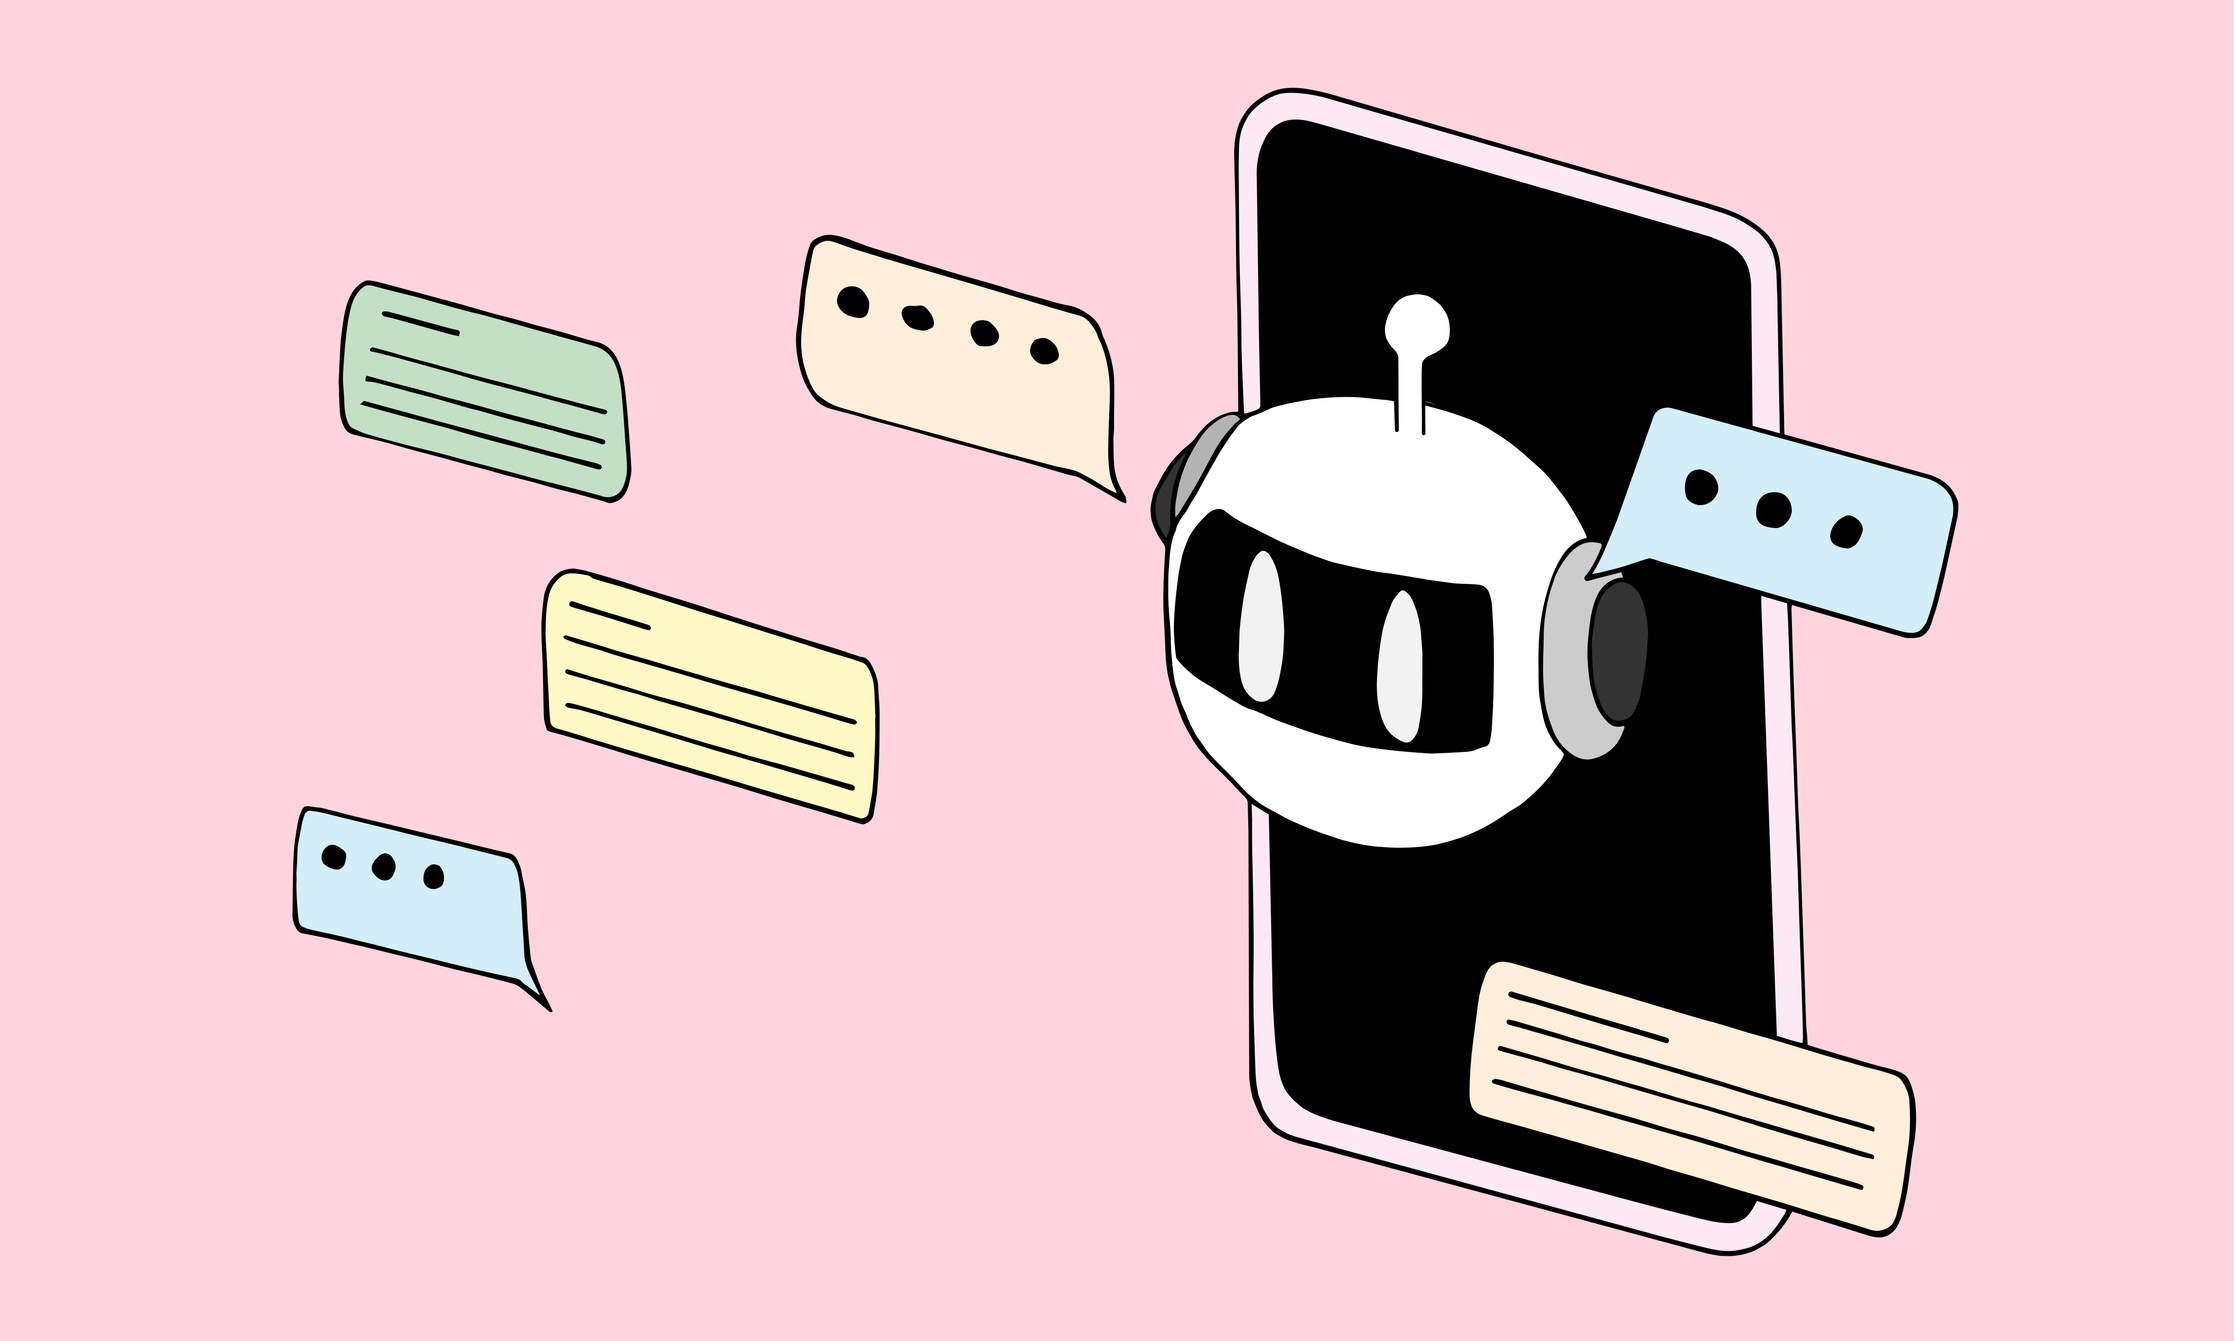 Chatbot กําลังมองออกจากหน้าจอสมาร์ทโฟน มีคําพูดลอยมาอยู่รอบตัว พื้นหลังสีชมพู